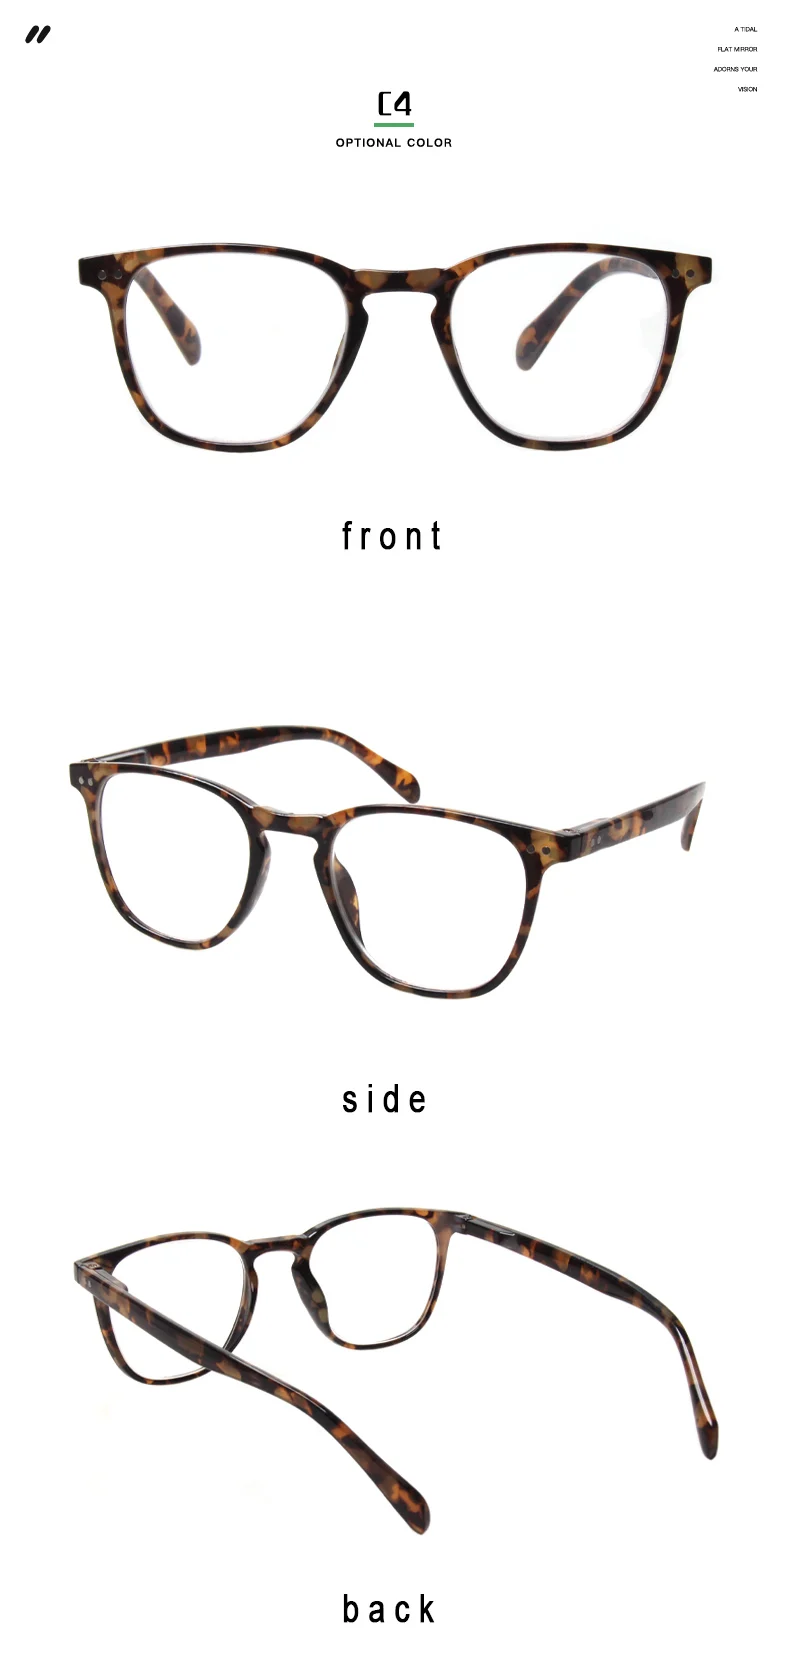 Модные прямоугольные очки для чтения для мужчин и женщин, весенние шарниры, красочные печатные оправы для очков